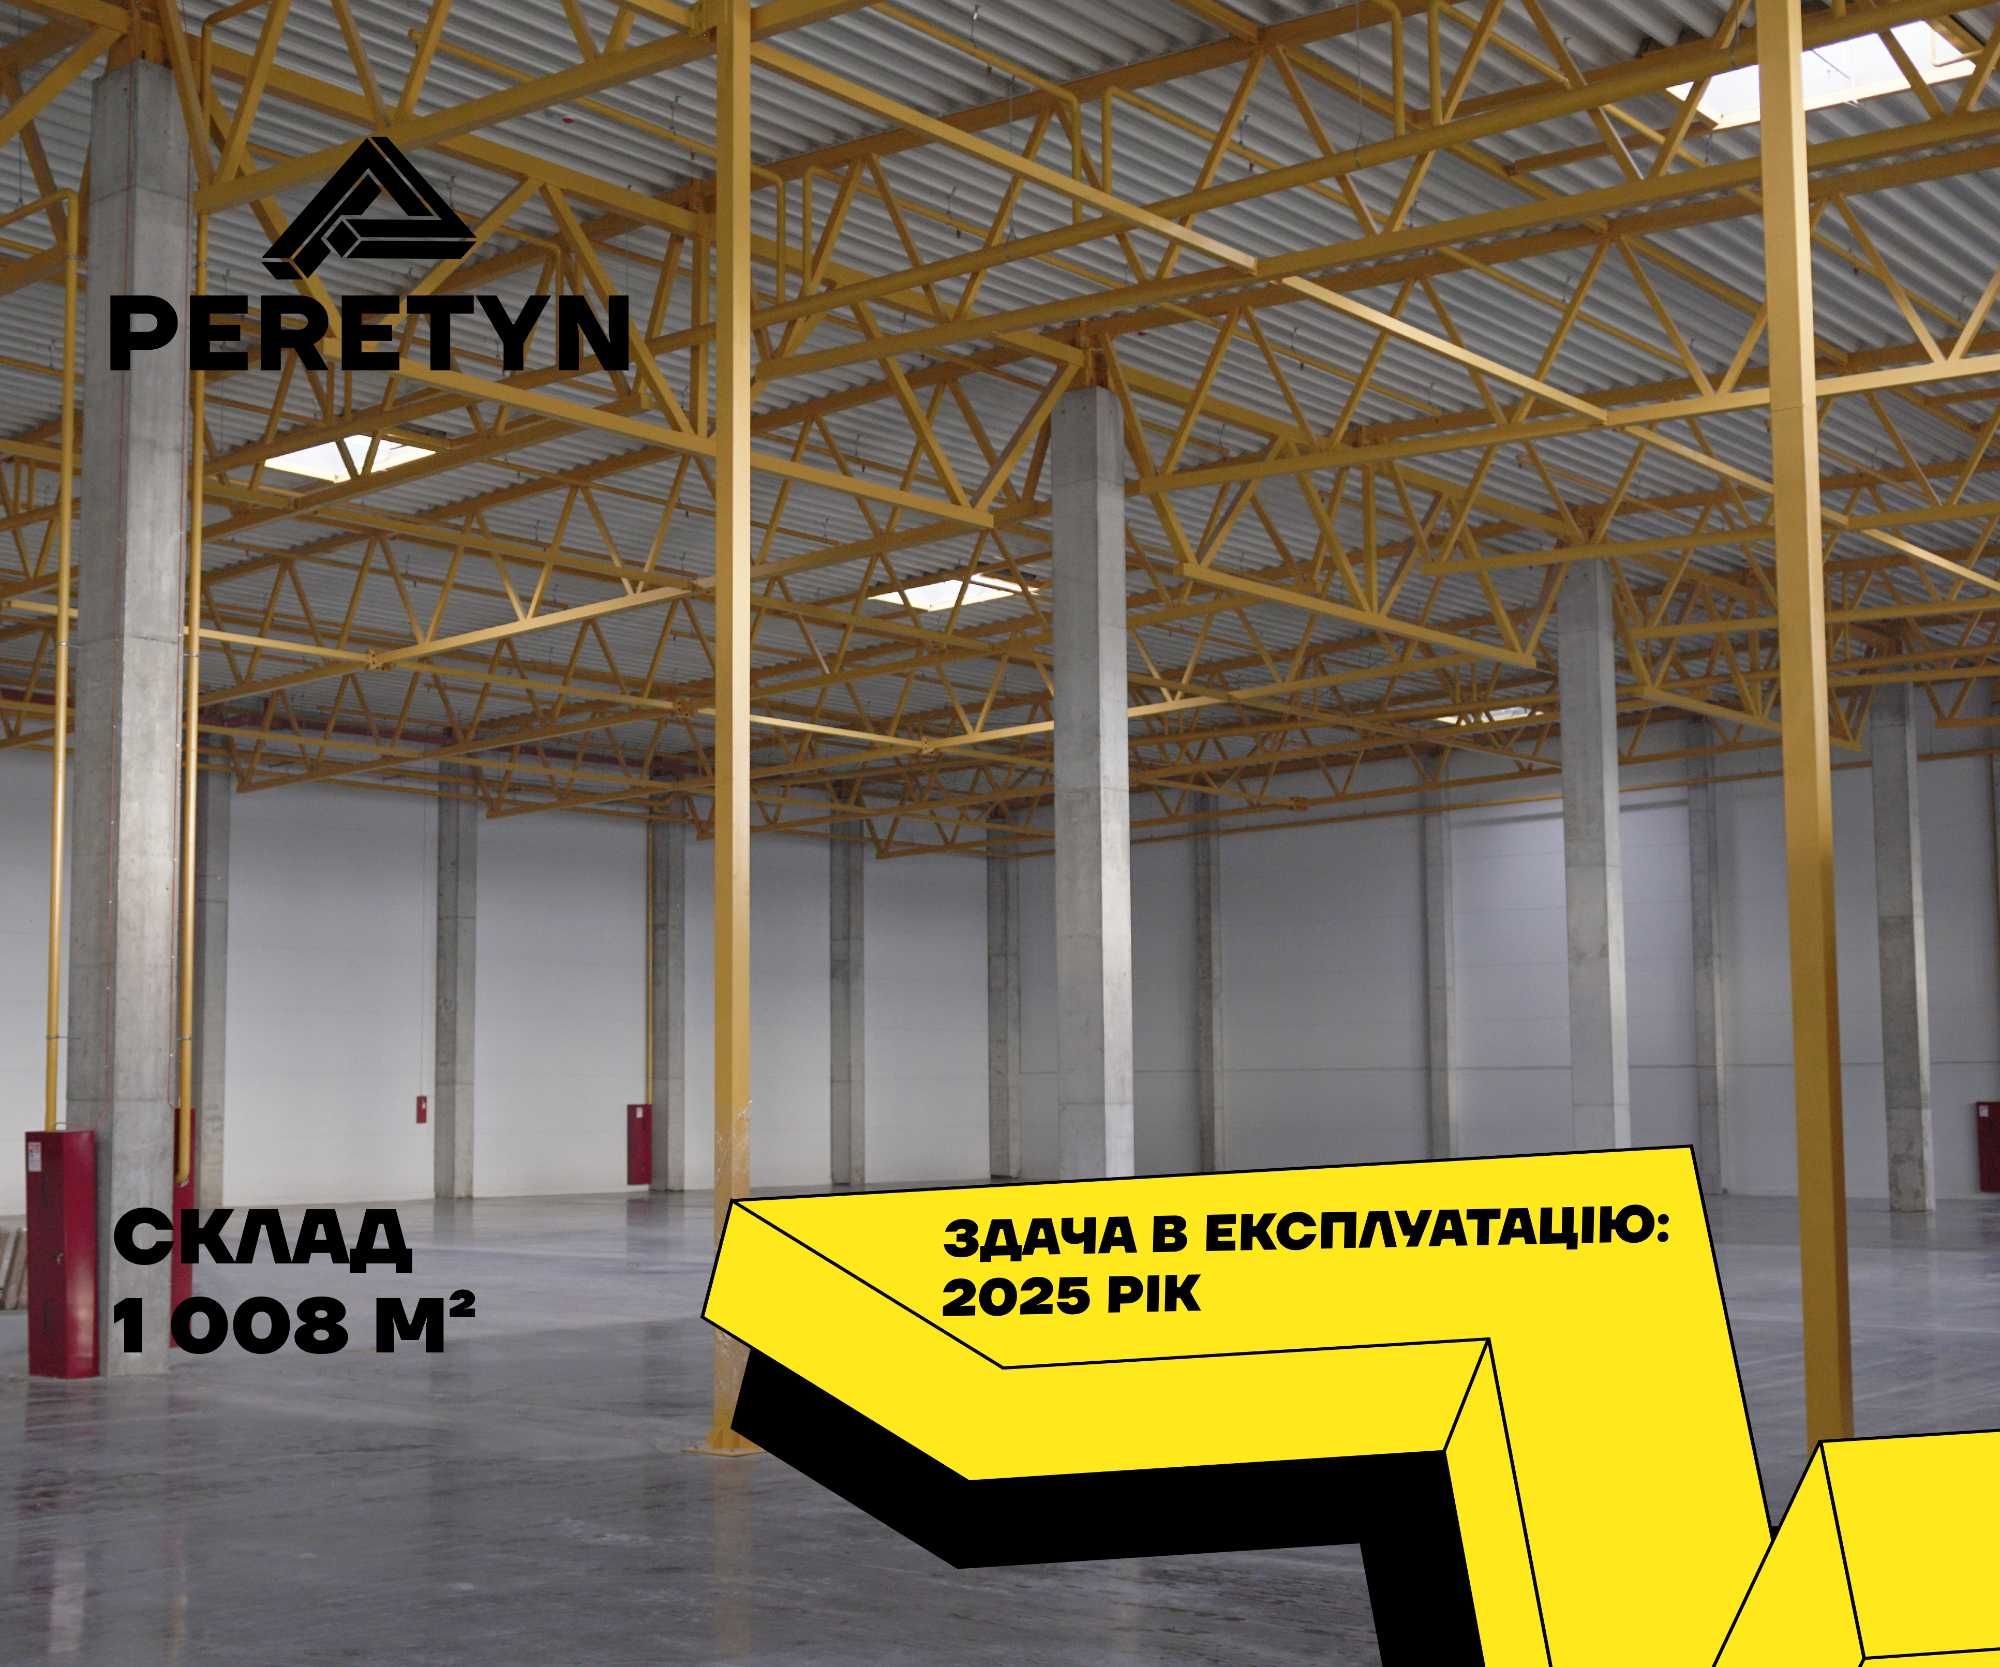 Продаж складу в Малехові 1 008 м² (новий логістичний комплекс)